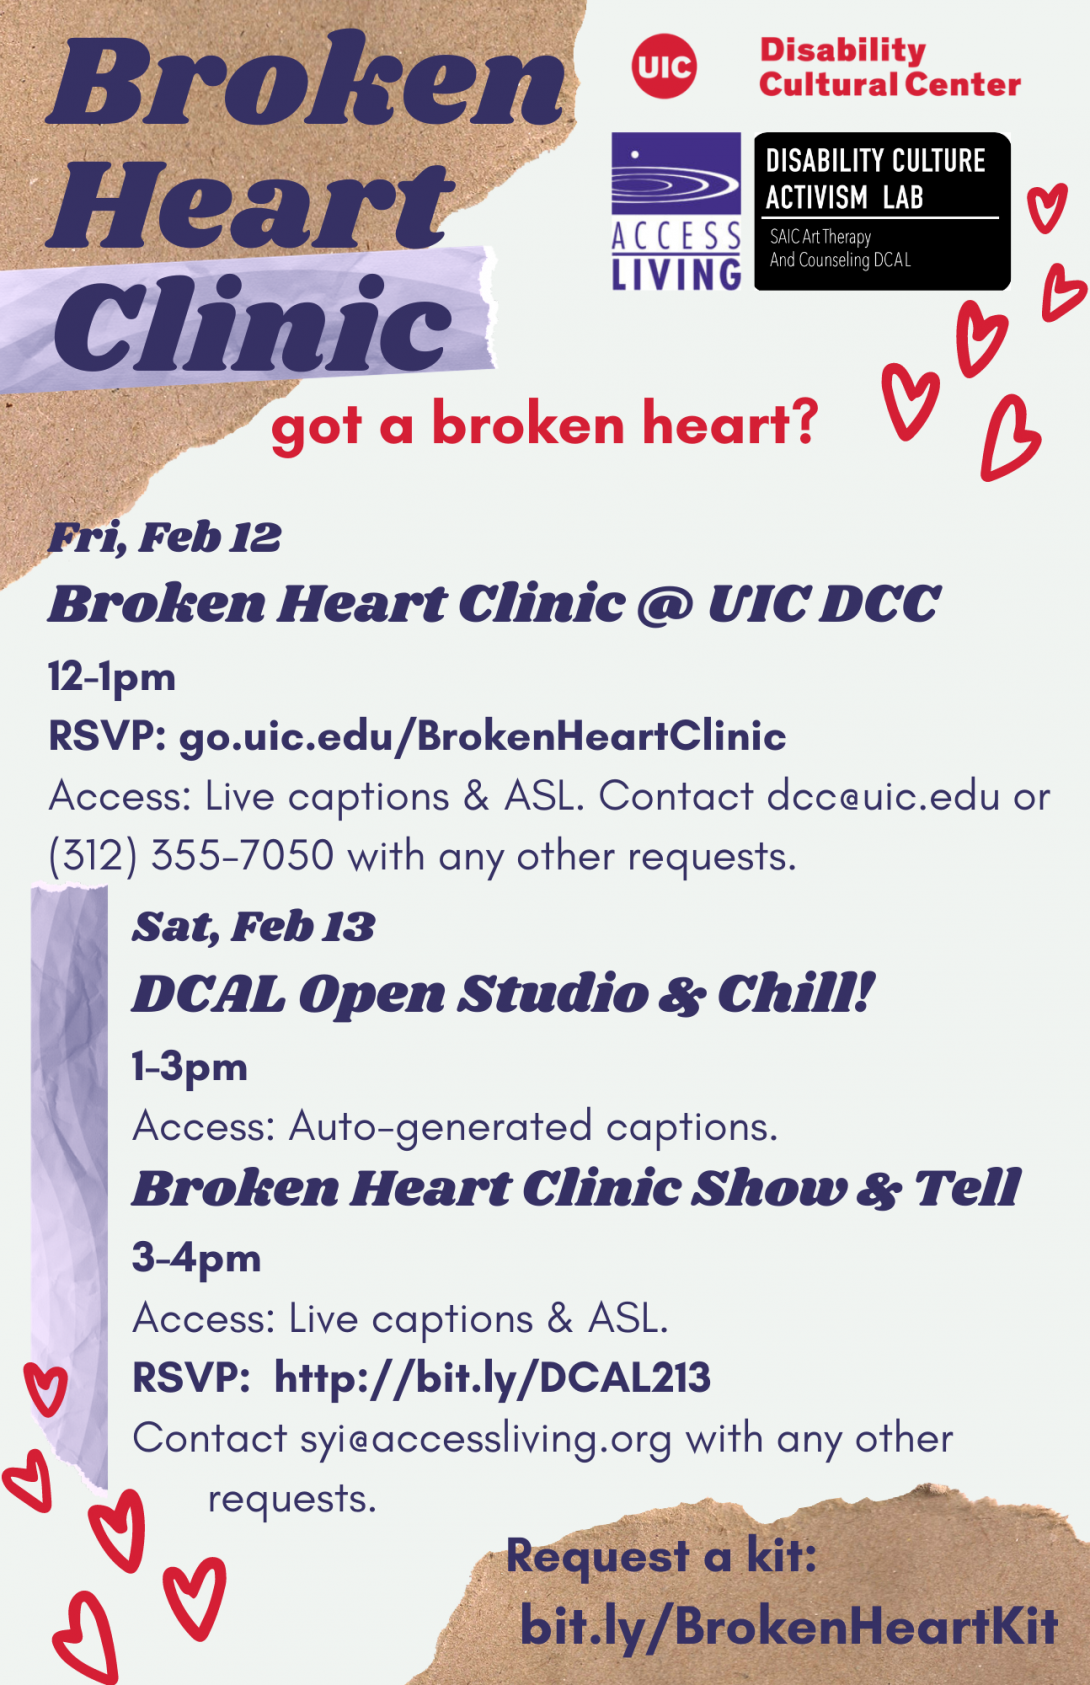 Broken Heart Clinic @ UIC DCC Flyer